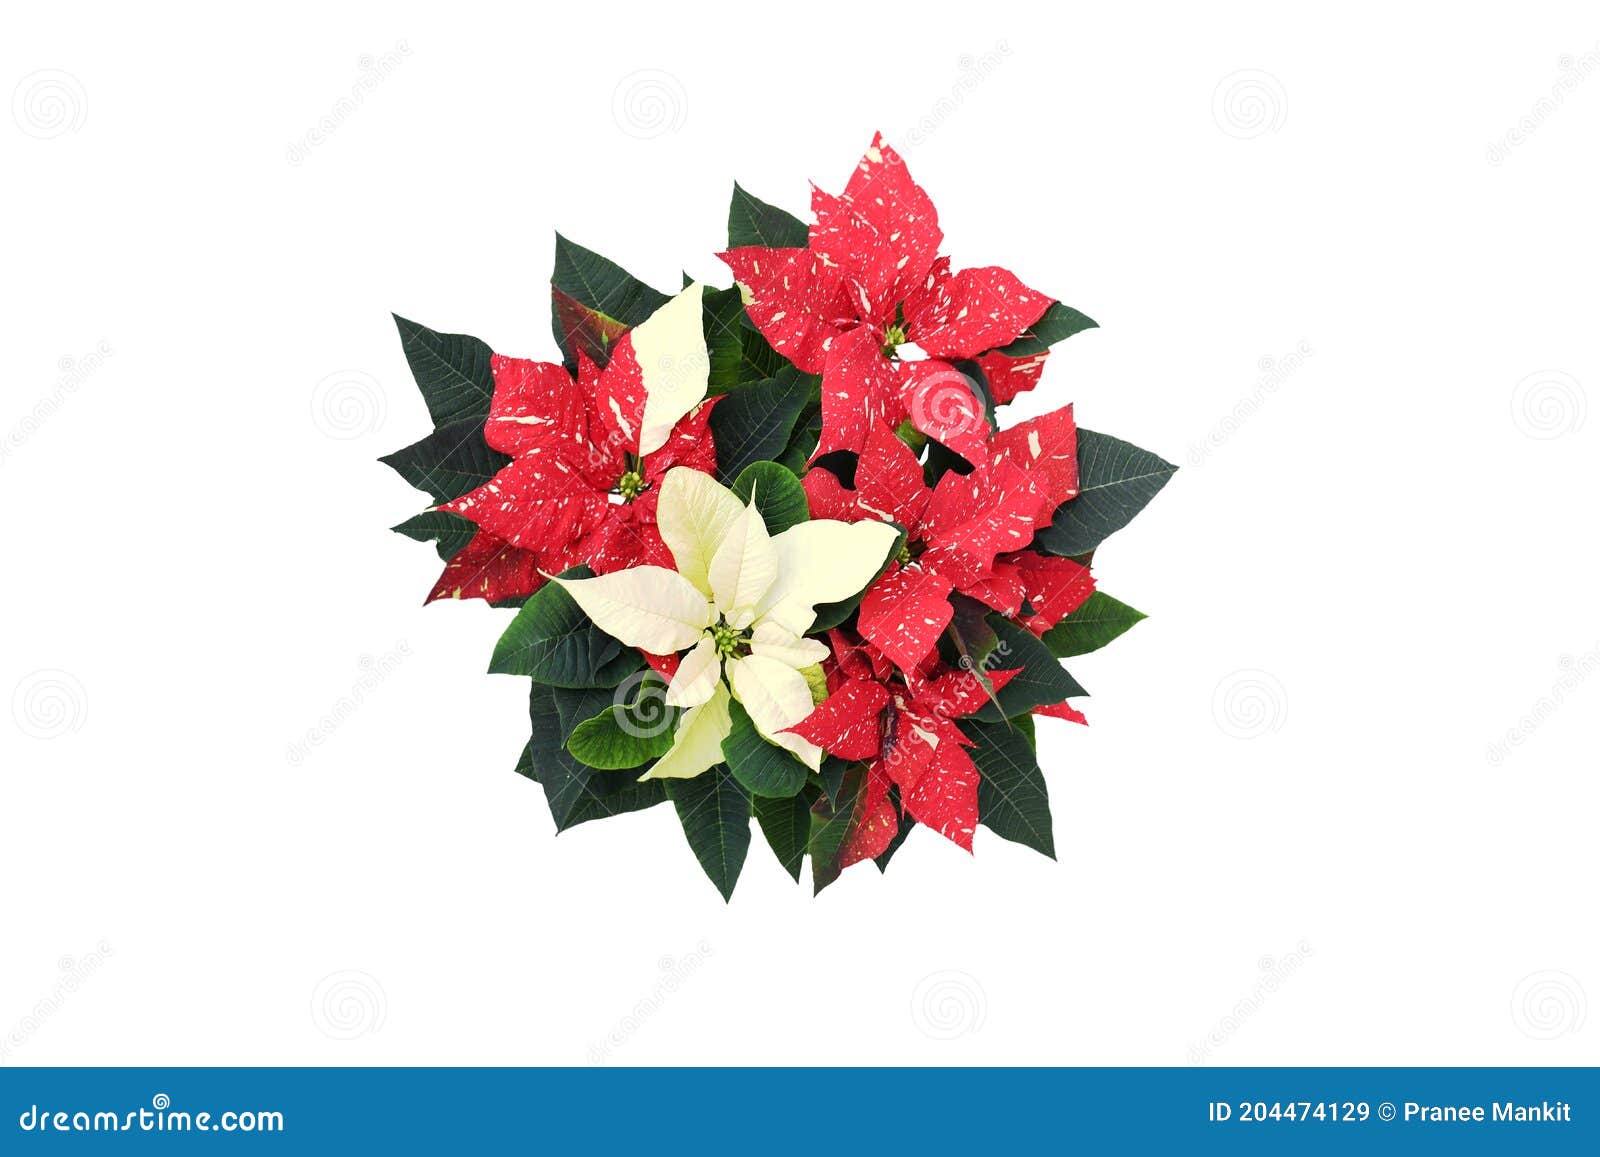 Hermosa Naturaleza Fresca Rojo, Flor De Nochebuena Blanca O Flor De  Estrella De Navidad Con Hojas De Follaje Verde En Blanco Imagen de archivo  - Imagen de saludos, flor: 204474129